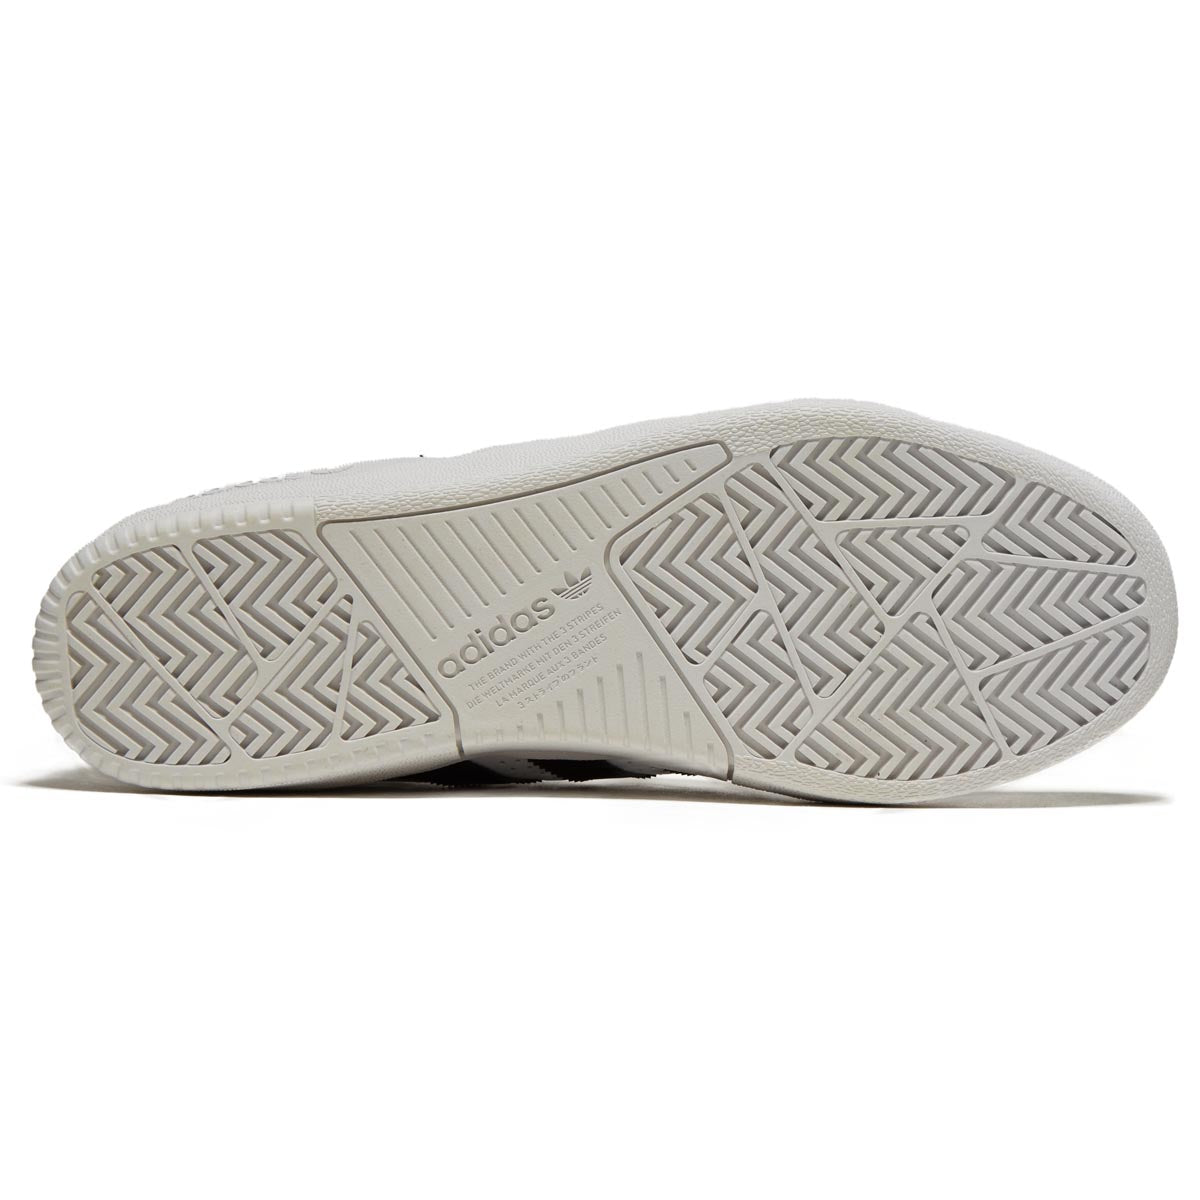 Adidas Tyshawn Shoes - White/Black/Gold Metallic image 4